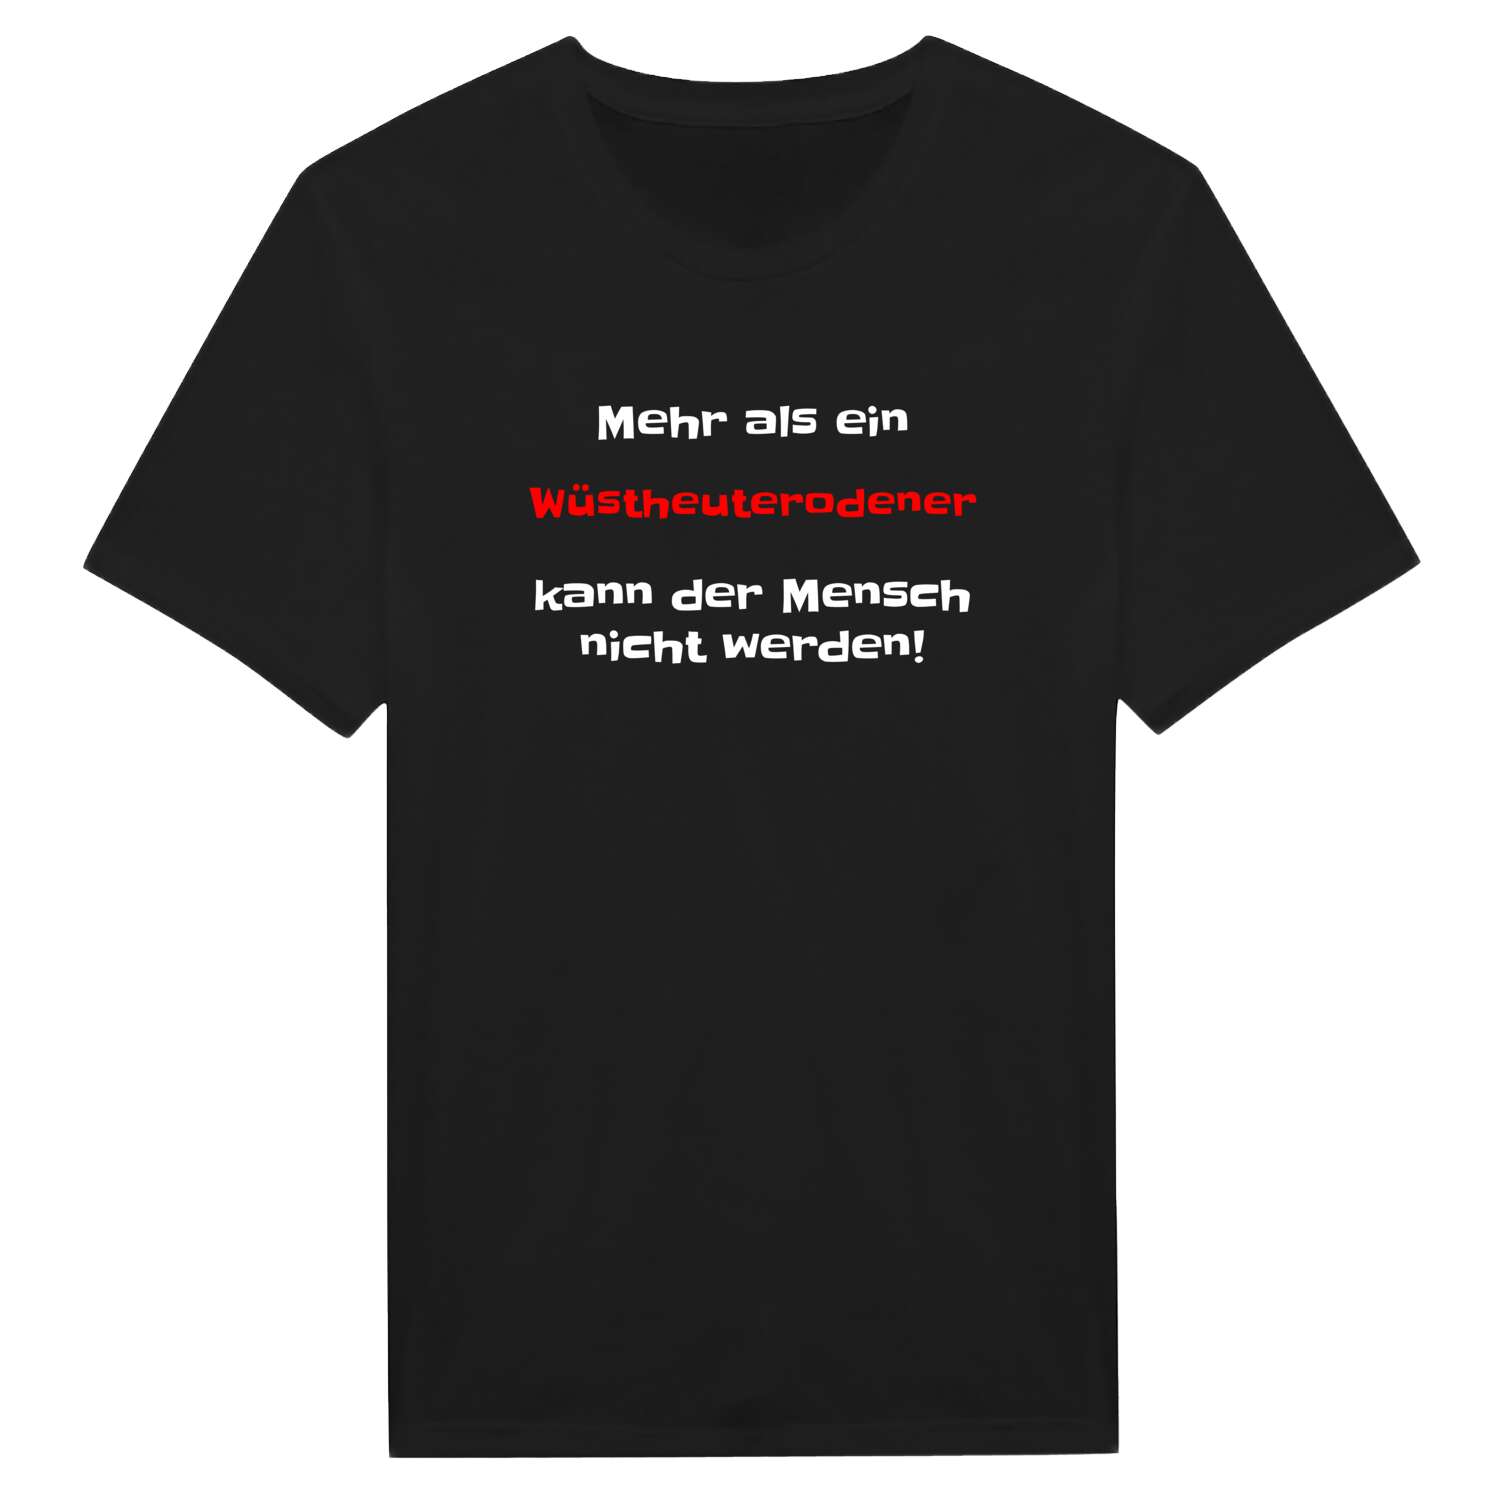 Wüstheuterode T-Shirt »Mehr als ein«